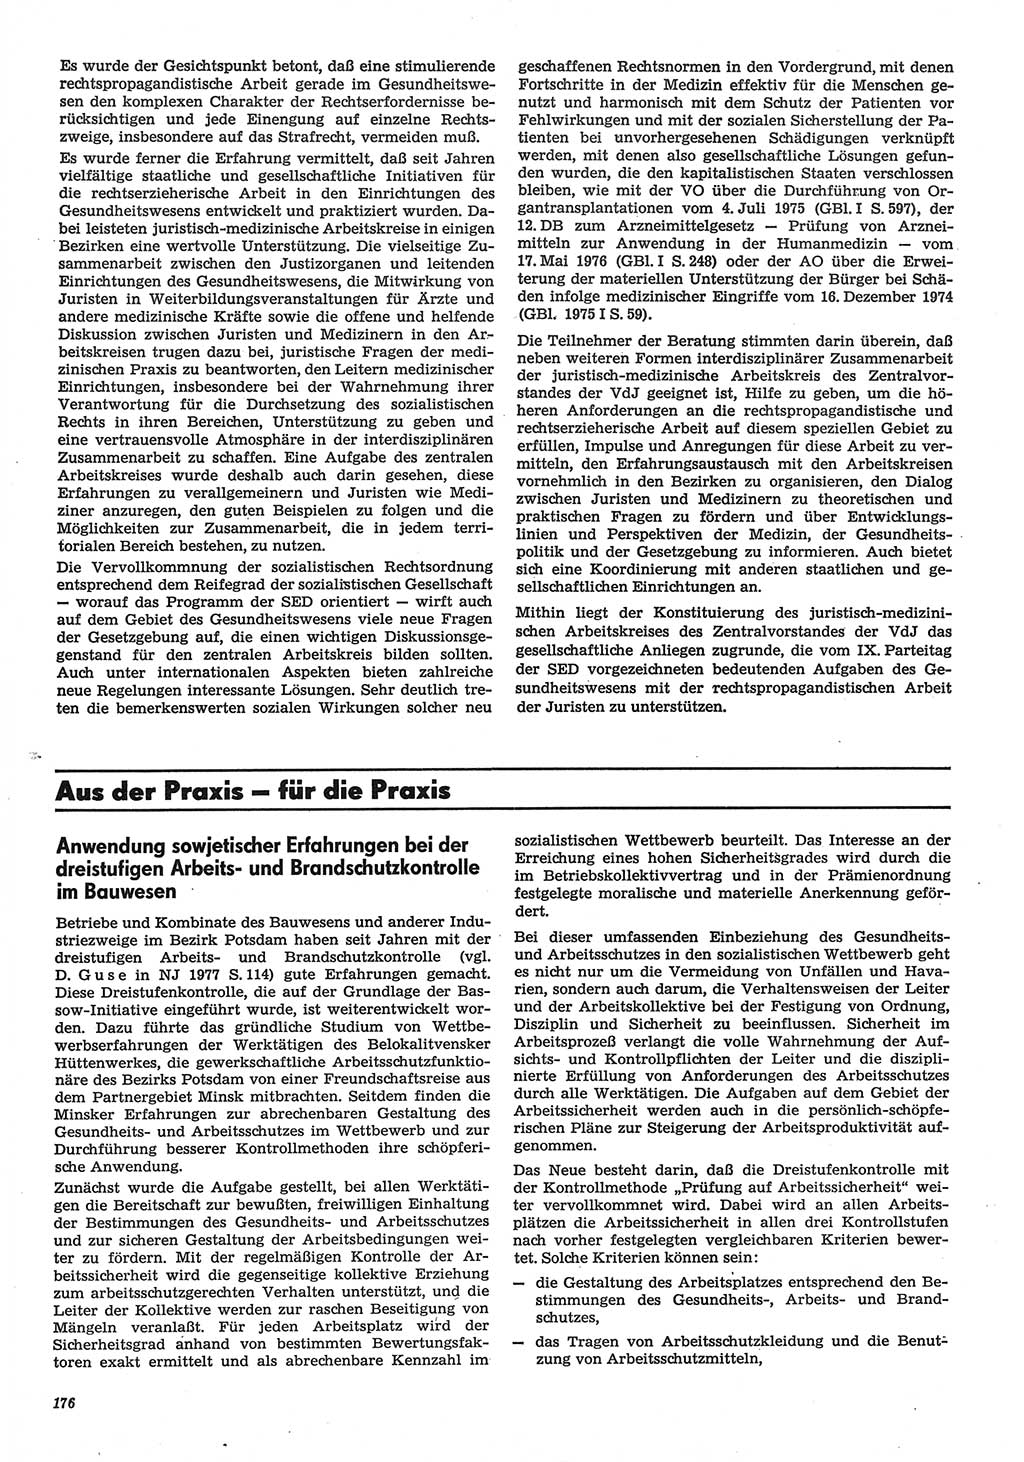 Neue Justiz (NJ), Zeitschrift für Recht und Rechtswissenschaft-Zeitschrift, sozialistisches Recht und Gesetzlichkeit, 31. Jahrgang 1977, Seite 176 (NJ DDR 1977, S. 176)